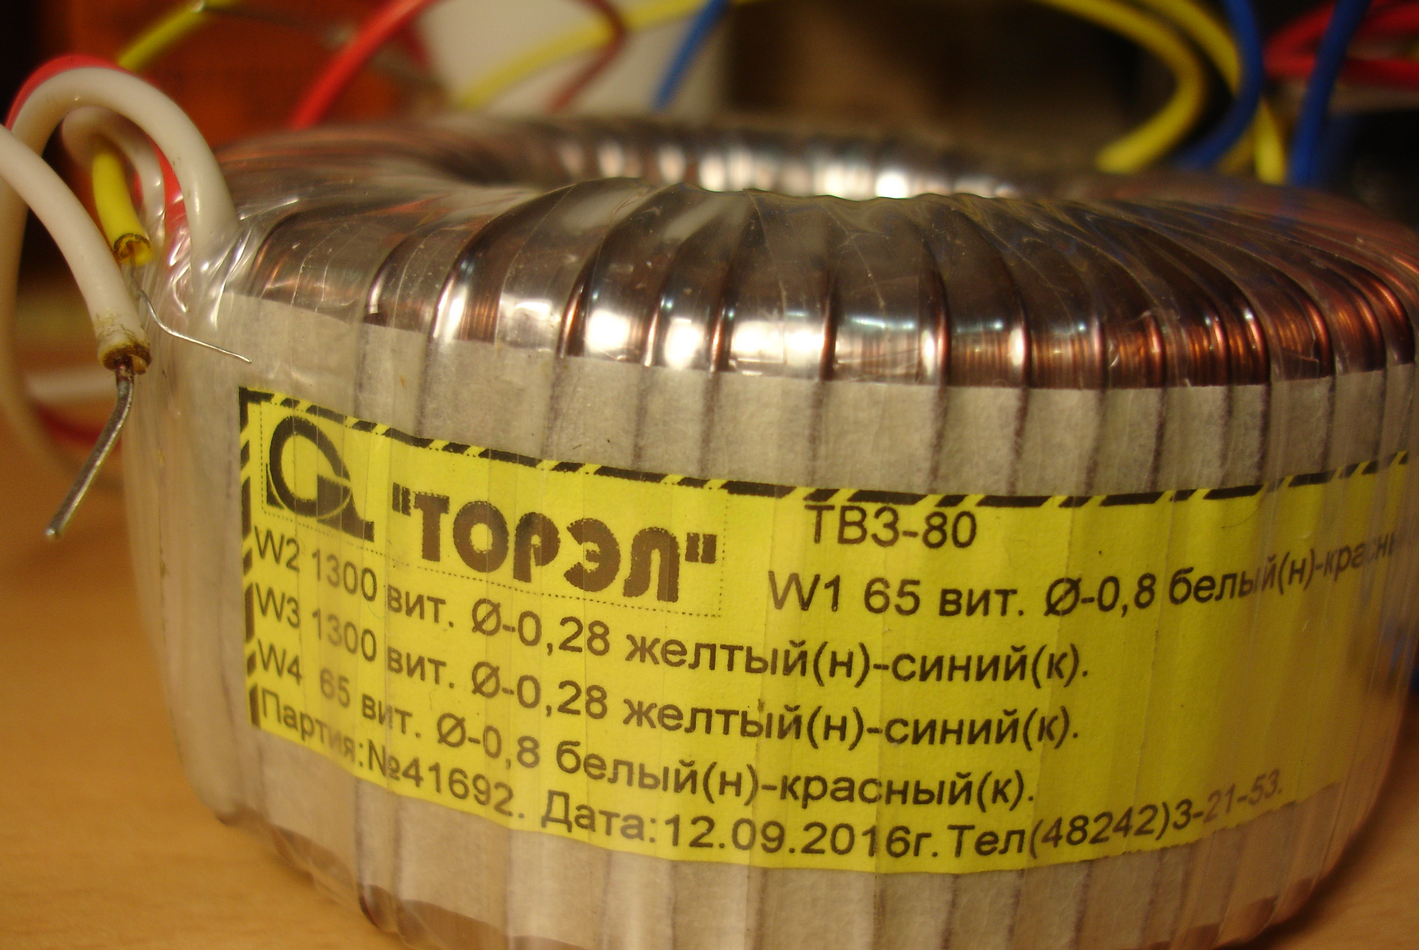 Купить трансформатор для усилителя. Трансформатор ТВЗ 80. Трансформаторы Торэл-80 для лампового усилителя. Тороидальный трансформатор Торэл ТВЗ-80 (1). Тороидальный трансформатор ТС-600-1.